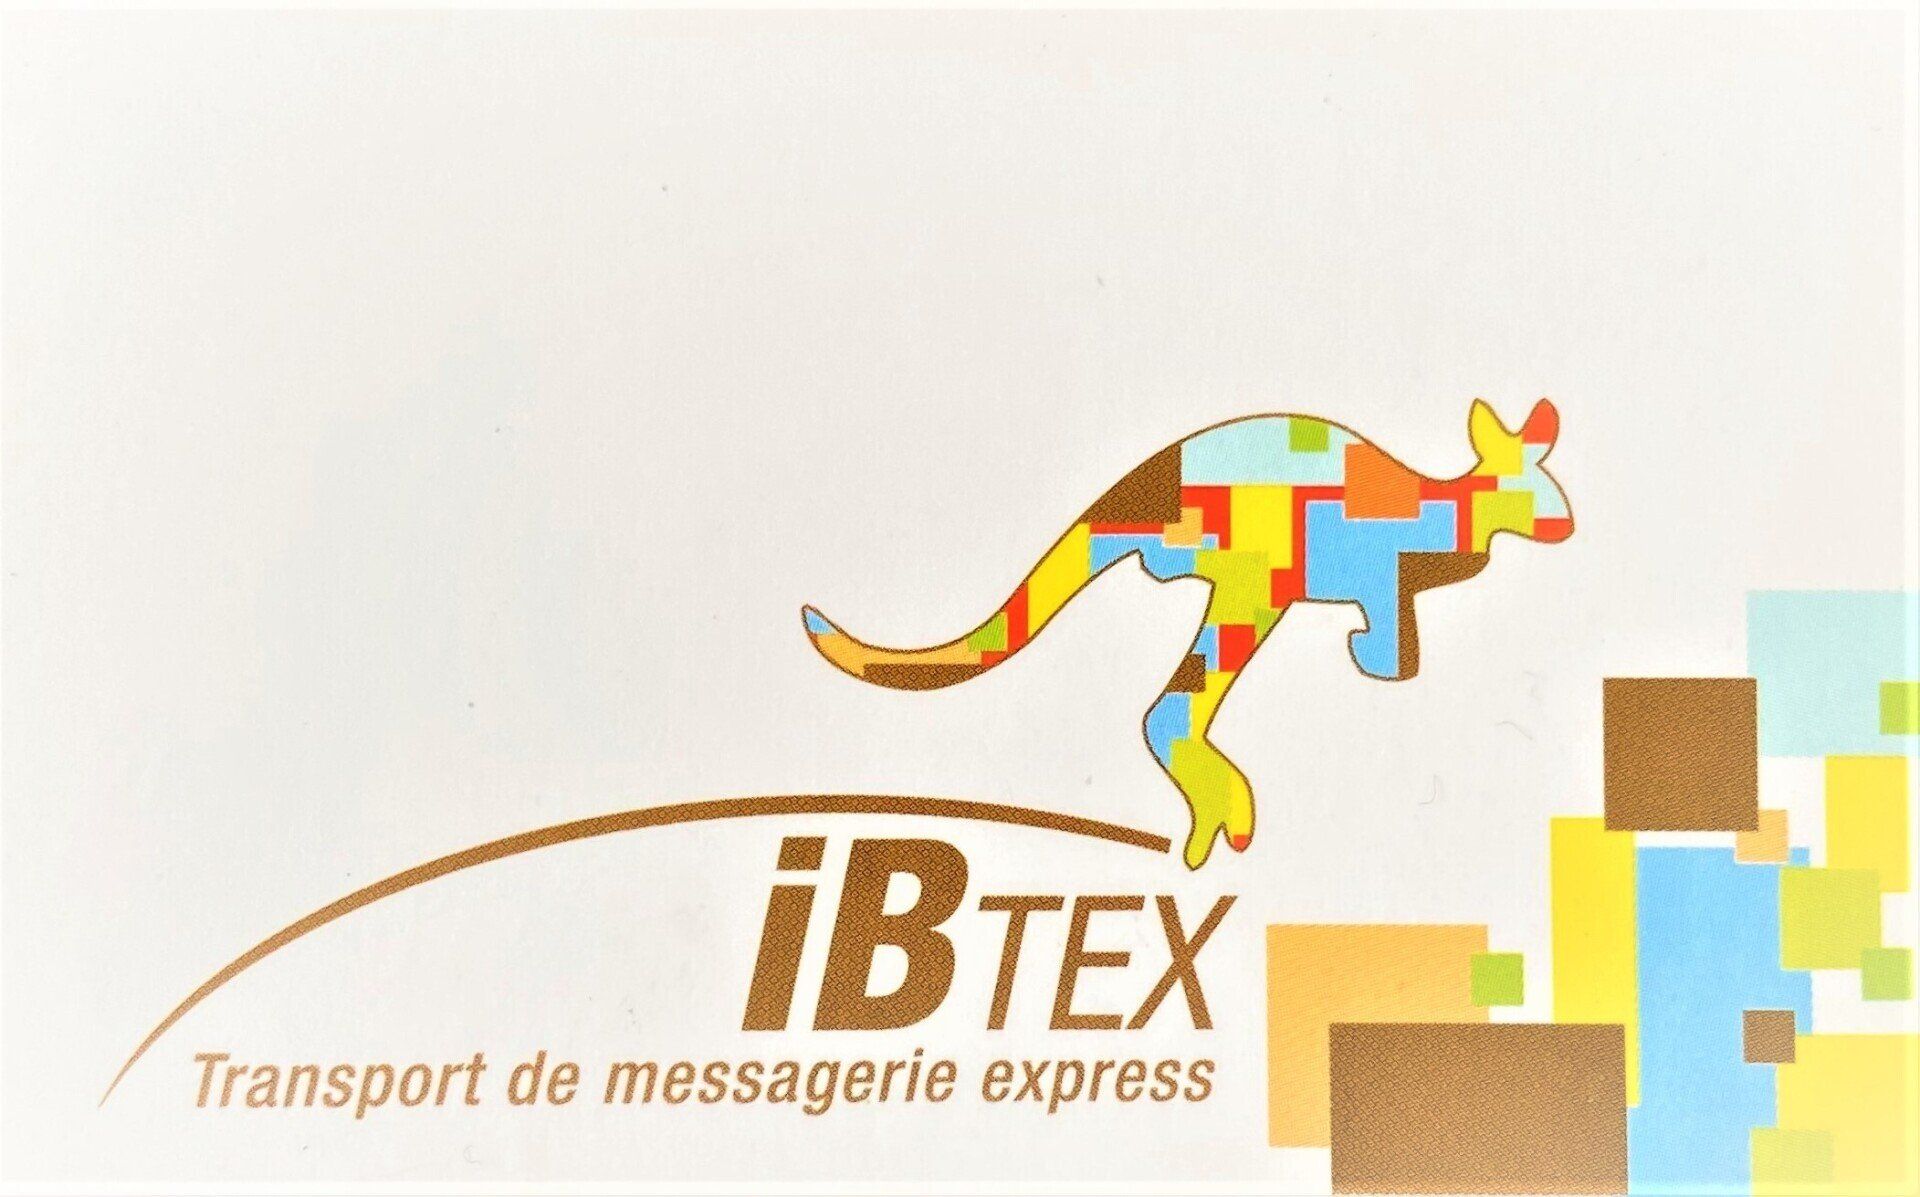 IBtex transport de messagerie express